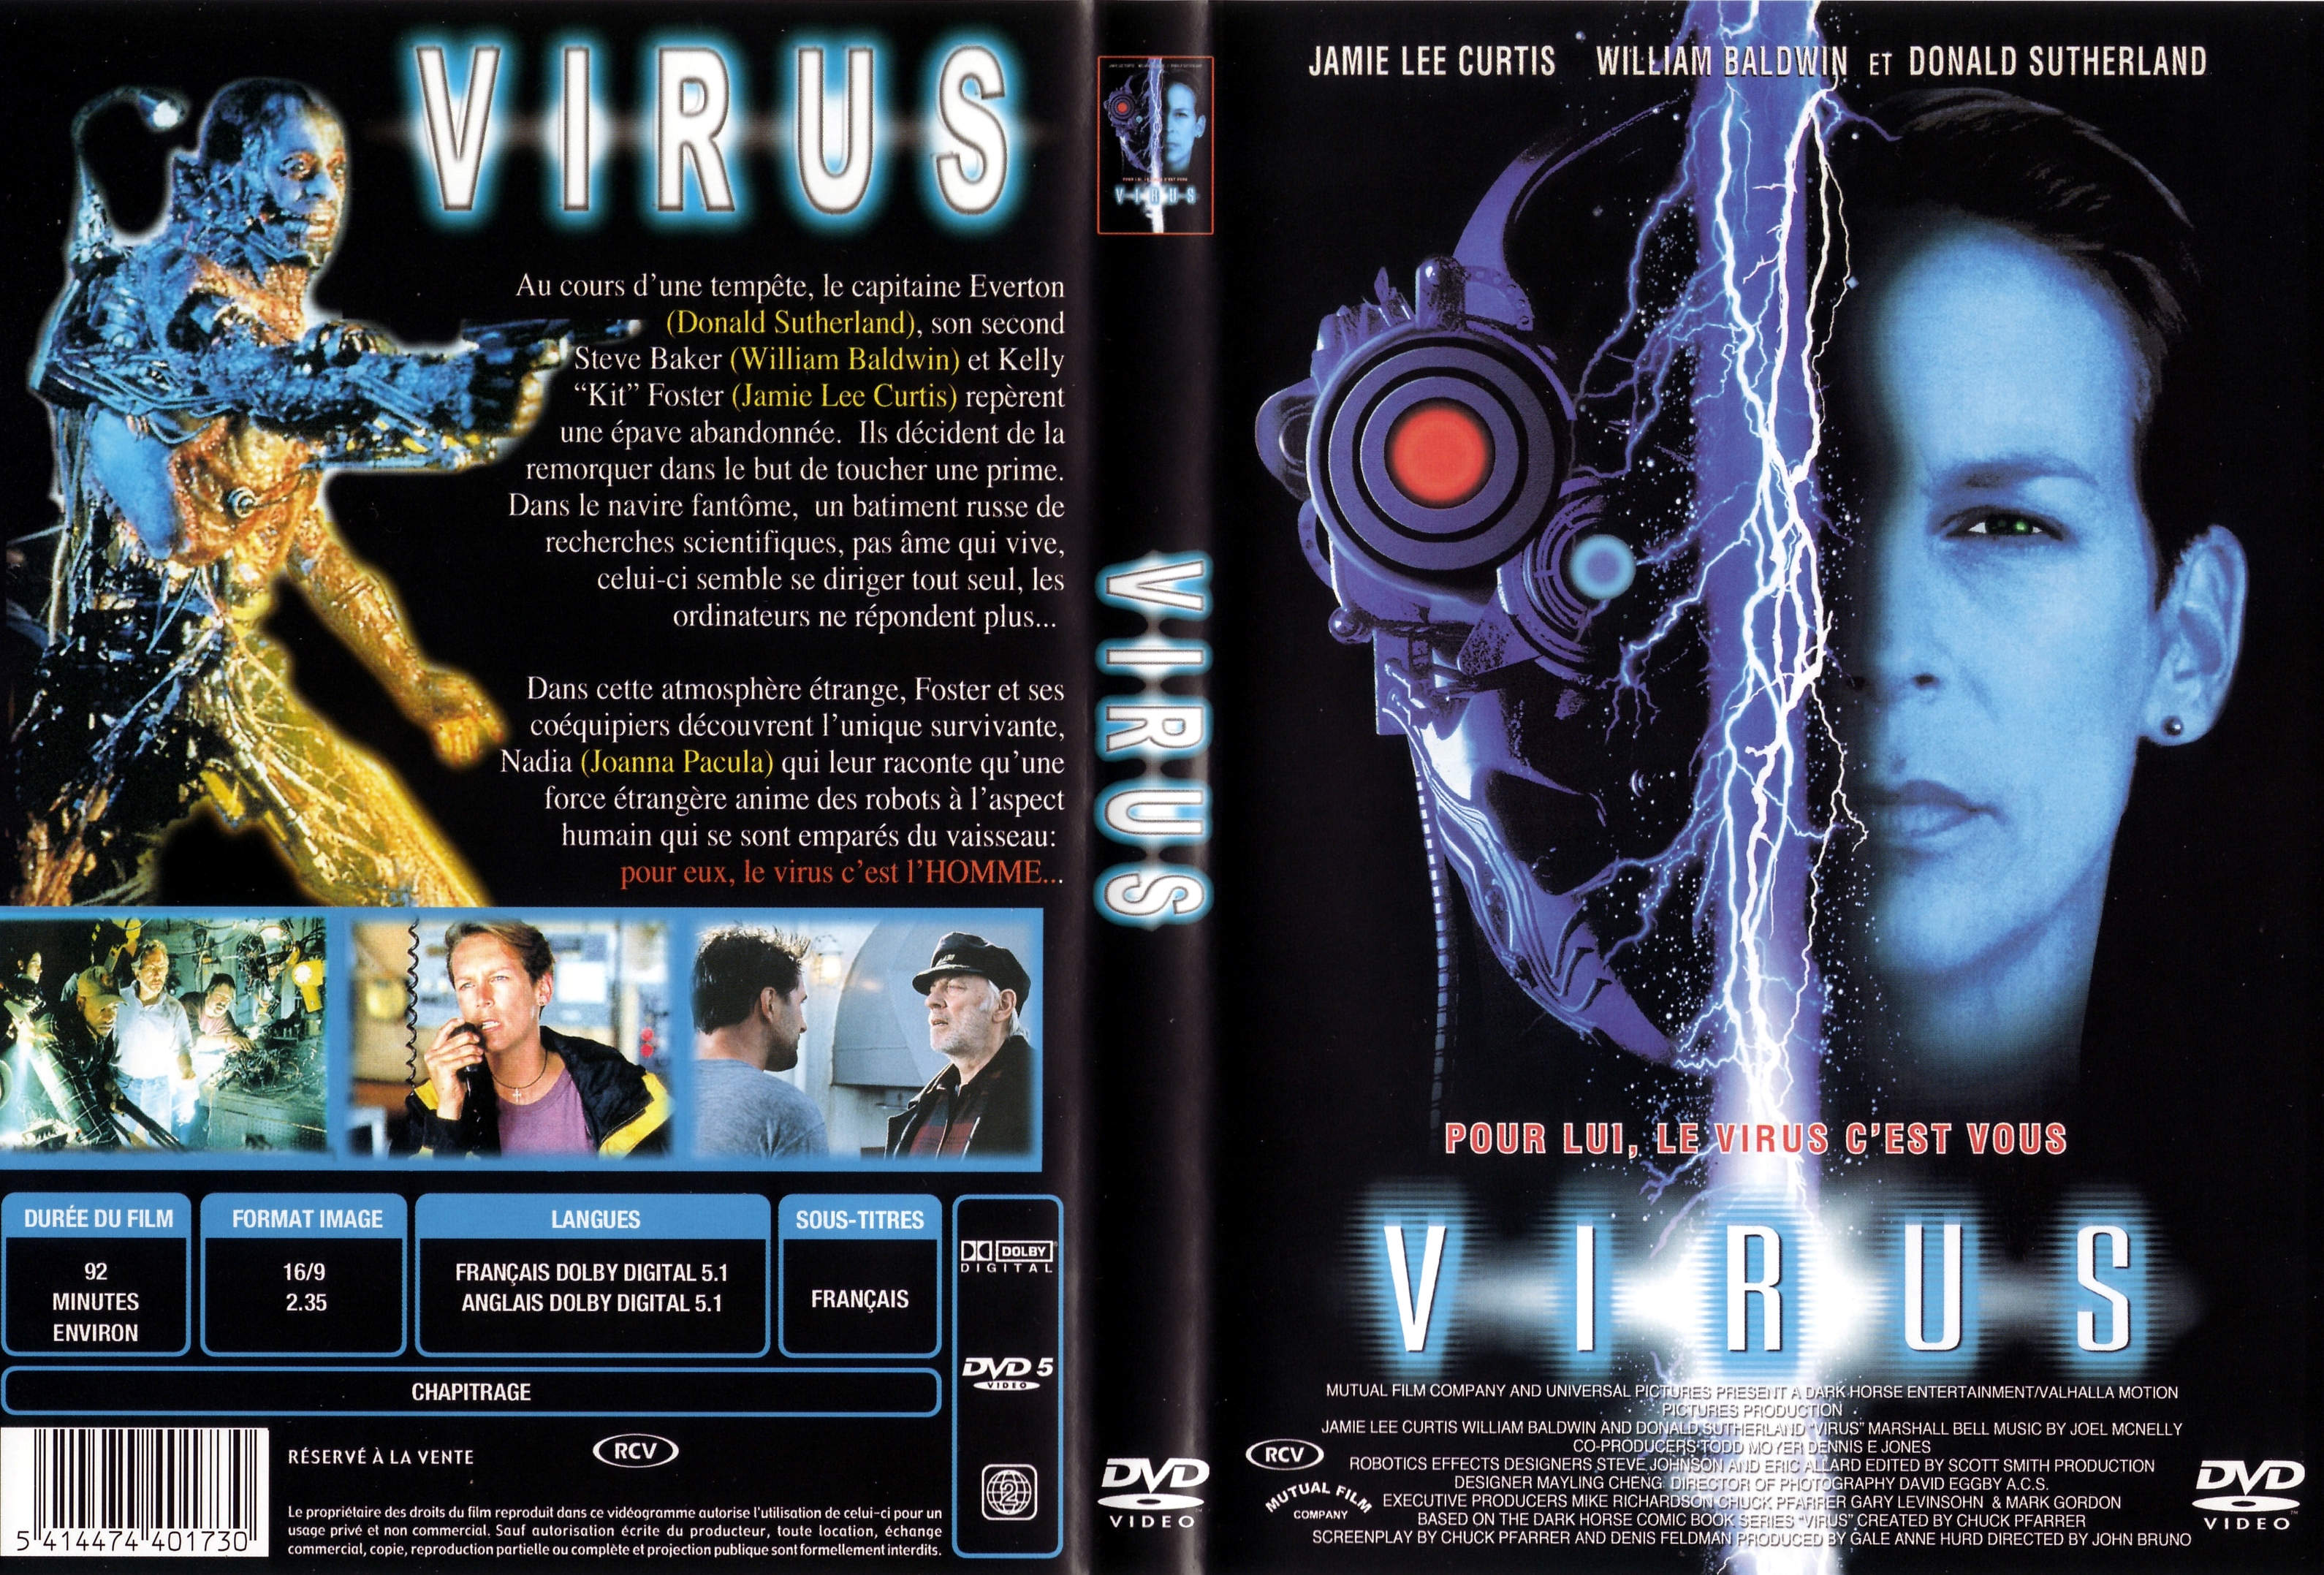 Jaquette DVD Virus (Jamie Lee Curtis)